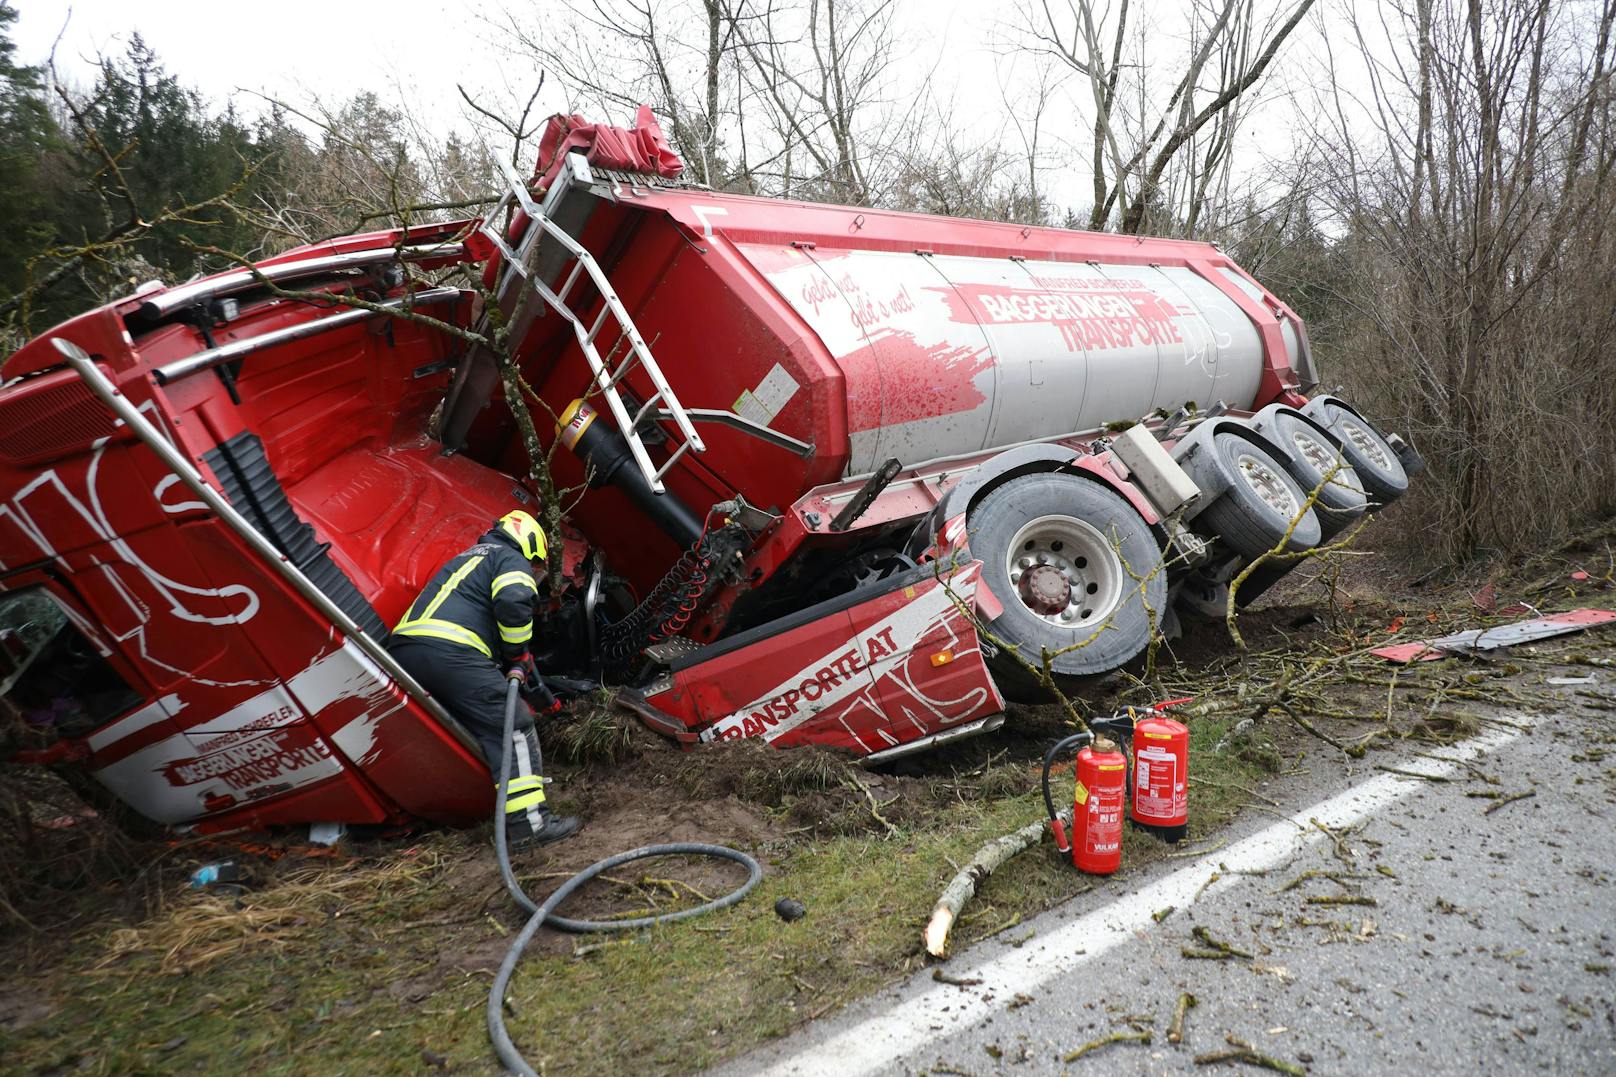 Am 21. Jänner kam es bei Waldneukirchen zu einem folgenschweren Unfall zwischen einem LKW und einem PKW. Aus unbekannter Ursache kollidierten die beiden Fahrzeuge, der LKW kam im Böschungsbereich zur Steyr in Schieflage zum Stillstand.